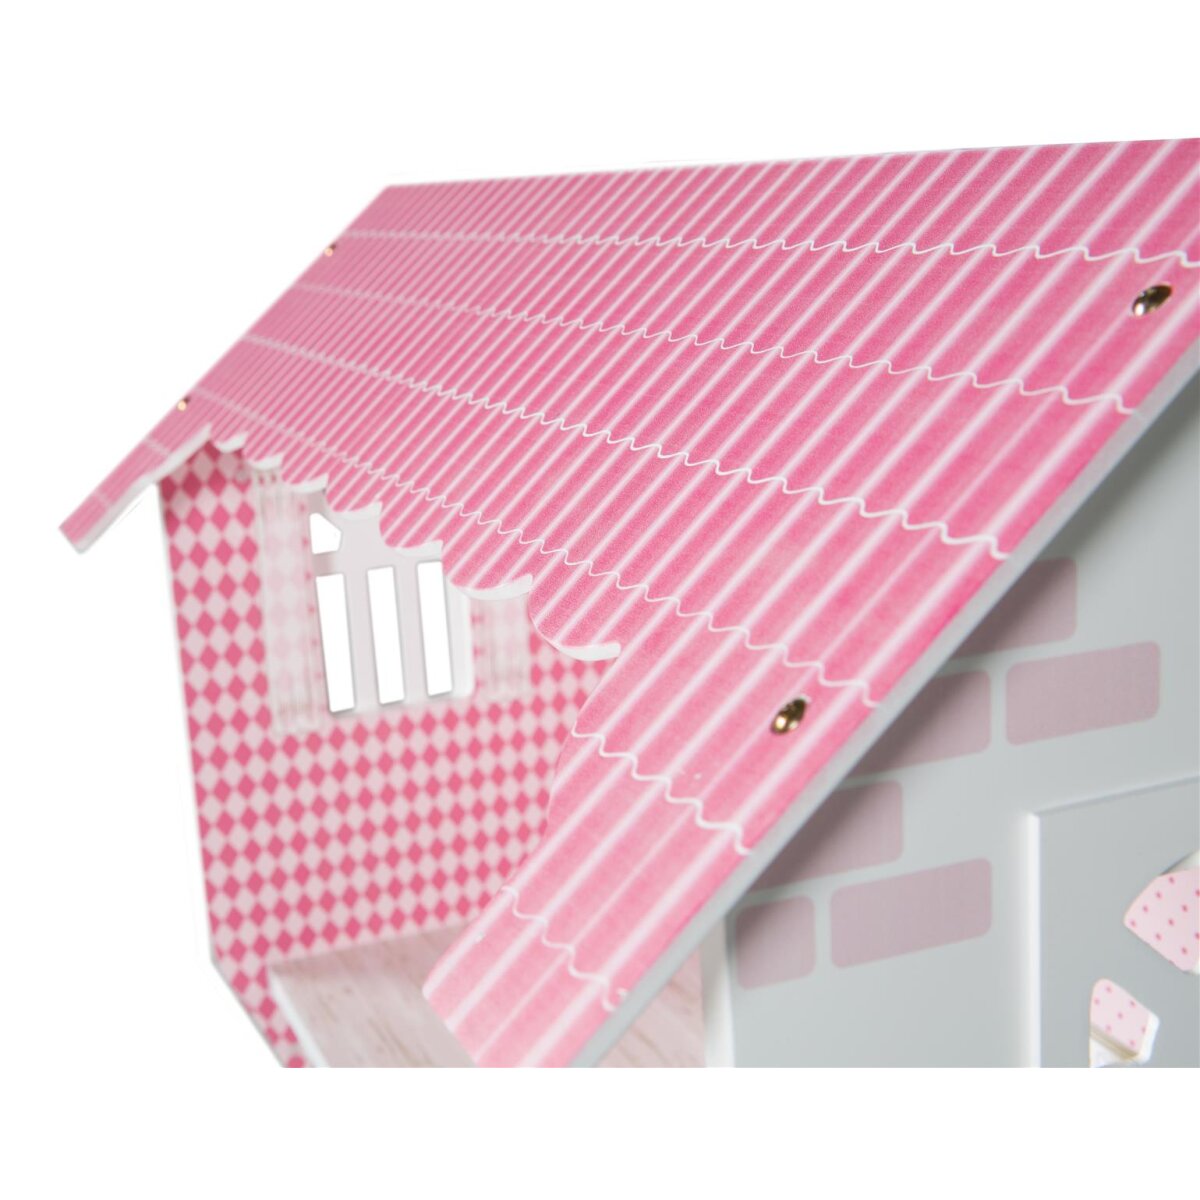 roba Puppenhaus & Spielregal inkl. Aufbewahrungsbox für Spielzeug,  rosa/weiß - B-Ware sehr gut, 64,99 €